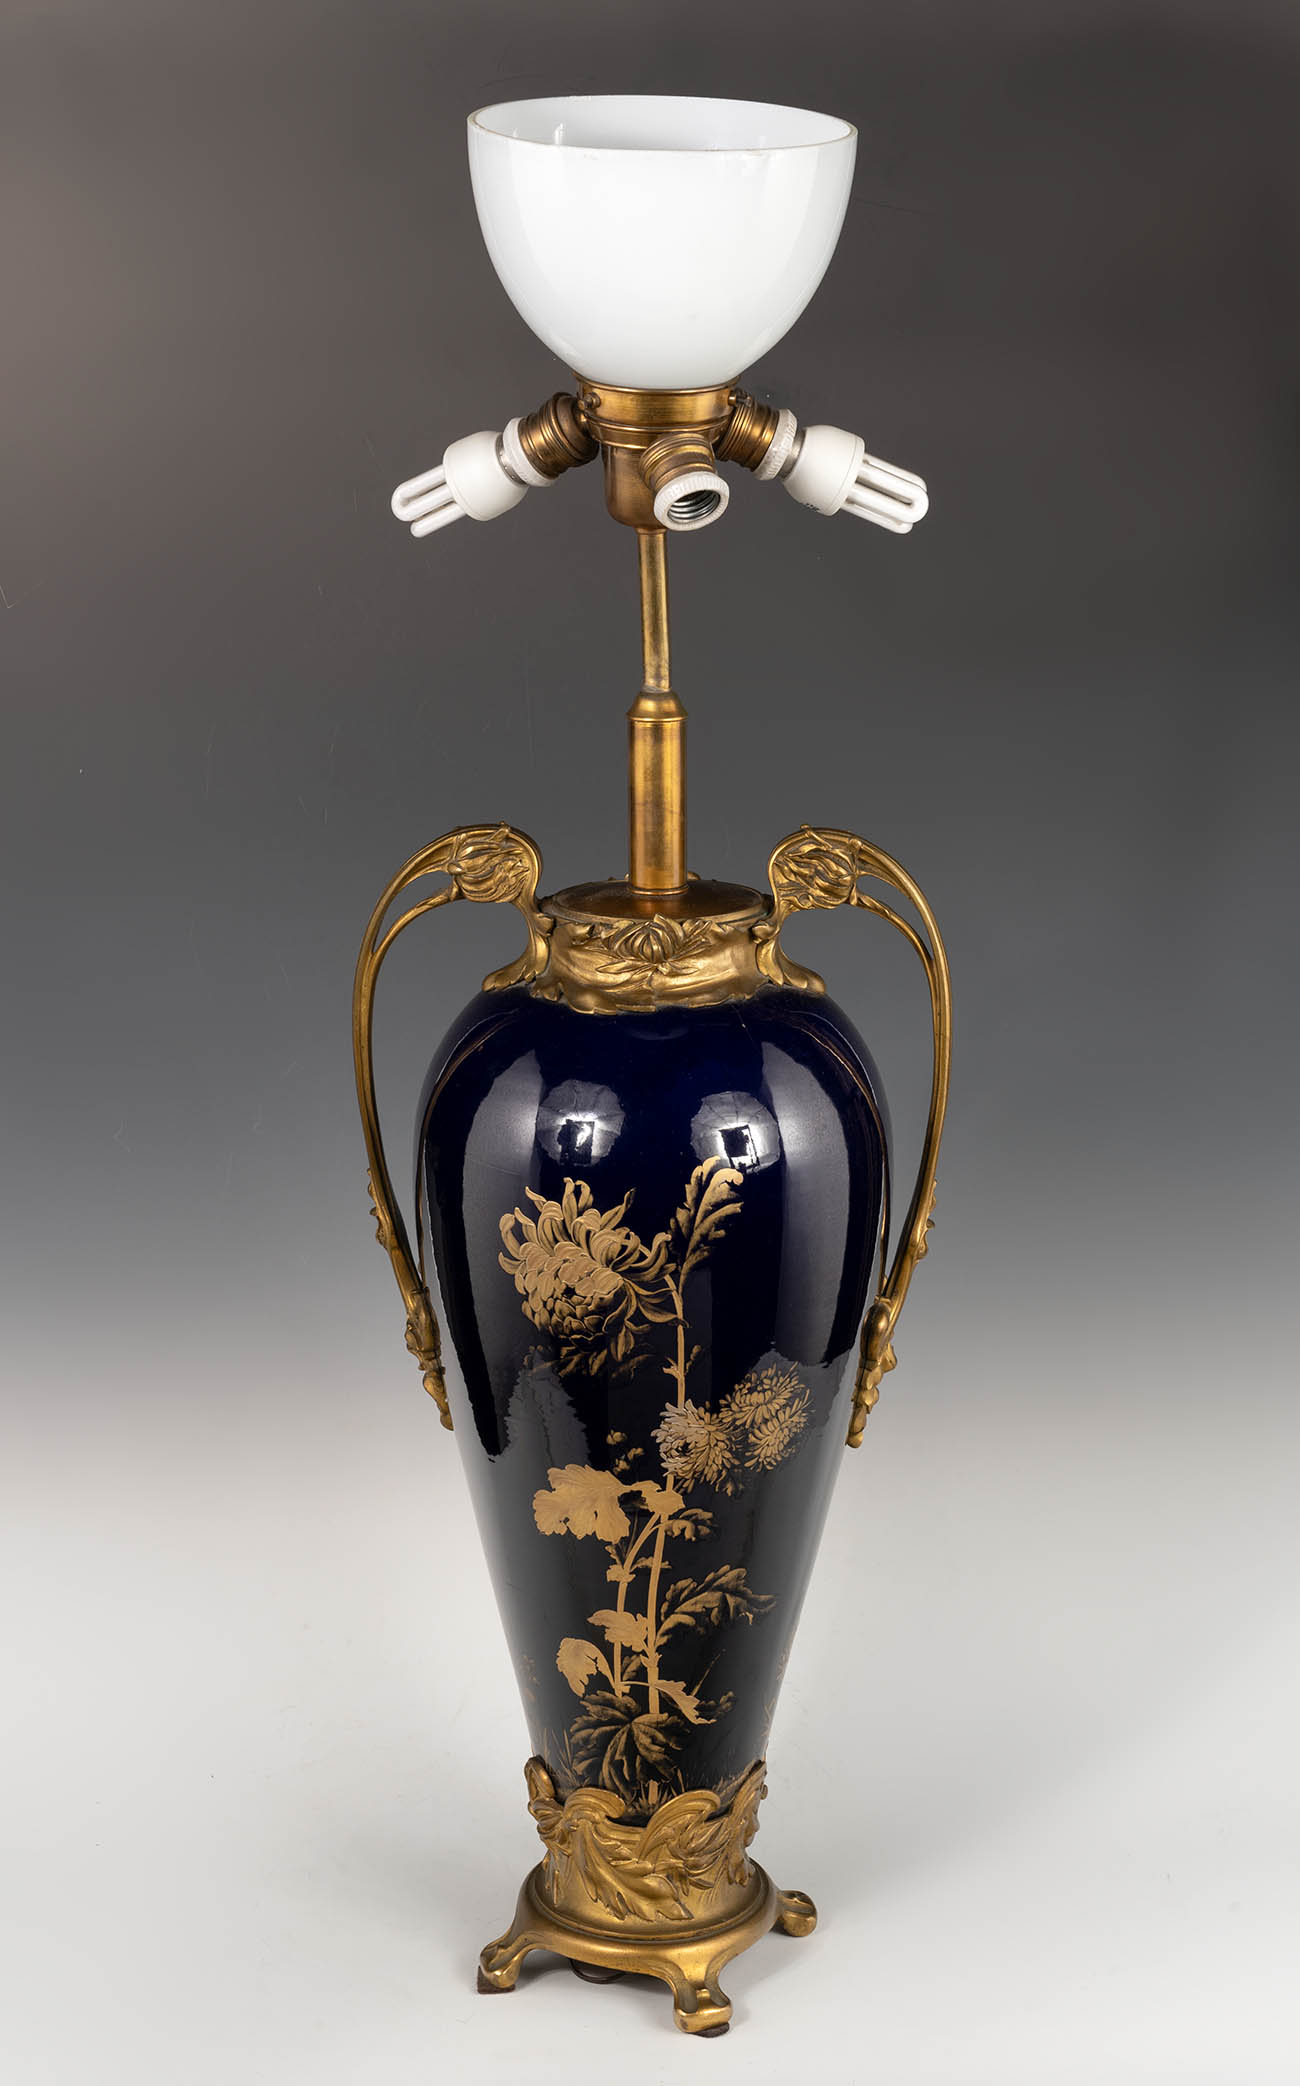 Art Nouveau vase transformed into a lamp stand, France, 20th century.Cobalt blue porcelain painted